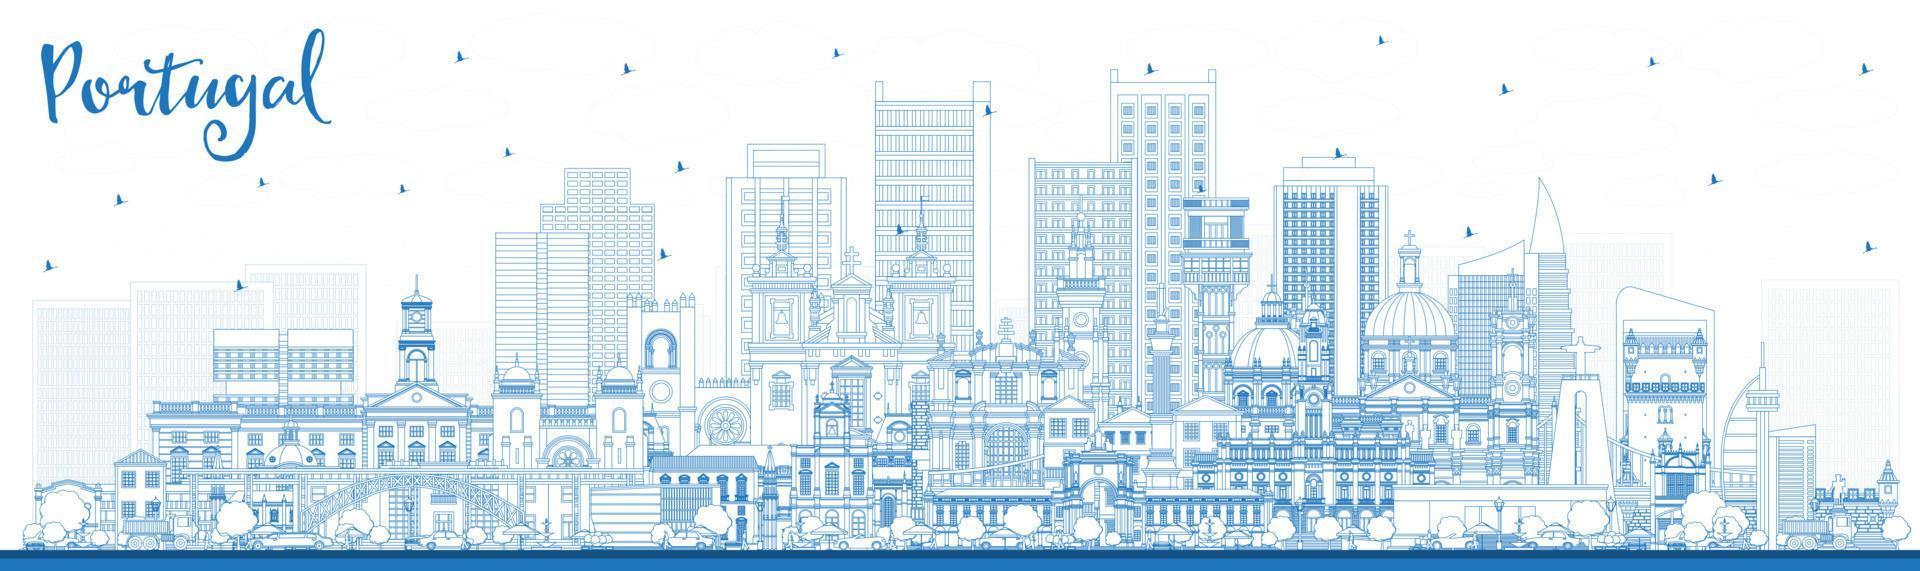 Portugal. schets stad horizon met blauw gebouwen. vector illustratie. concept met modern en historisch architectuur. Portugal stadsgezicht met oriëntatiepunten.